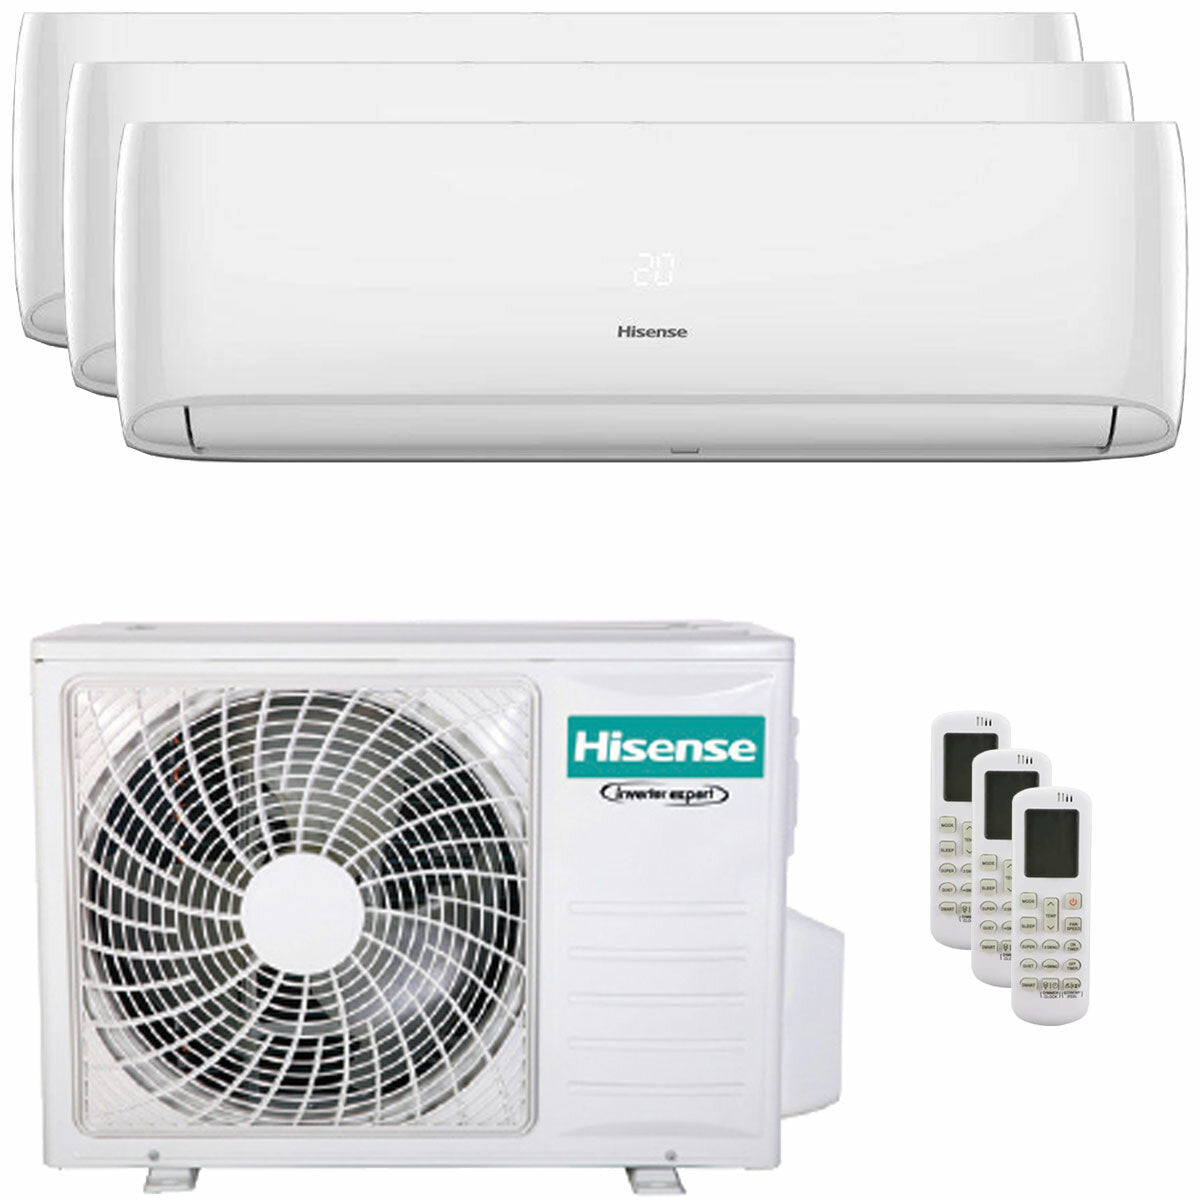 Hisense Hi-Comfort Trial Split Klimaanlage 12000+12000+12000 BTU Inverter A++ WLAN Außengerät 7,0 kW